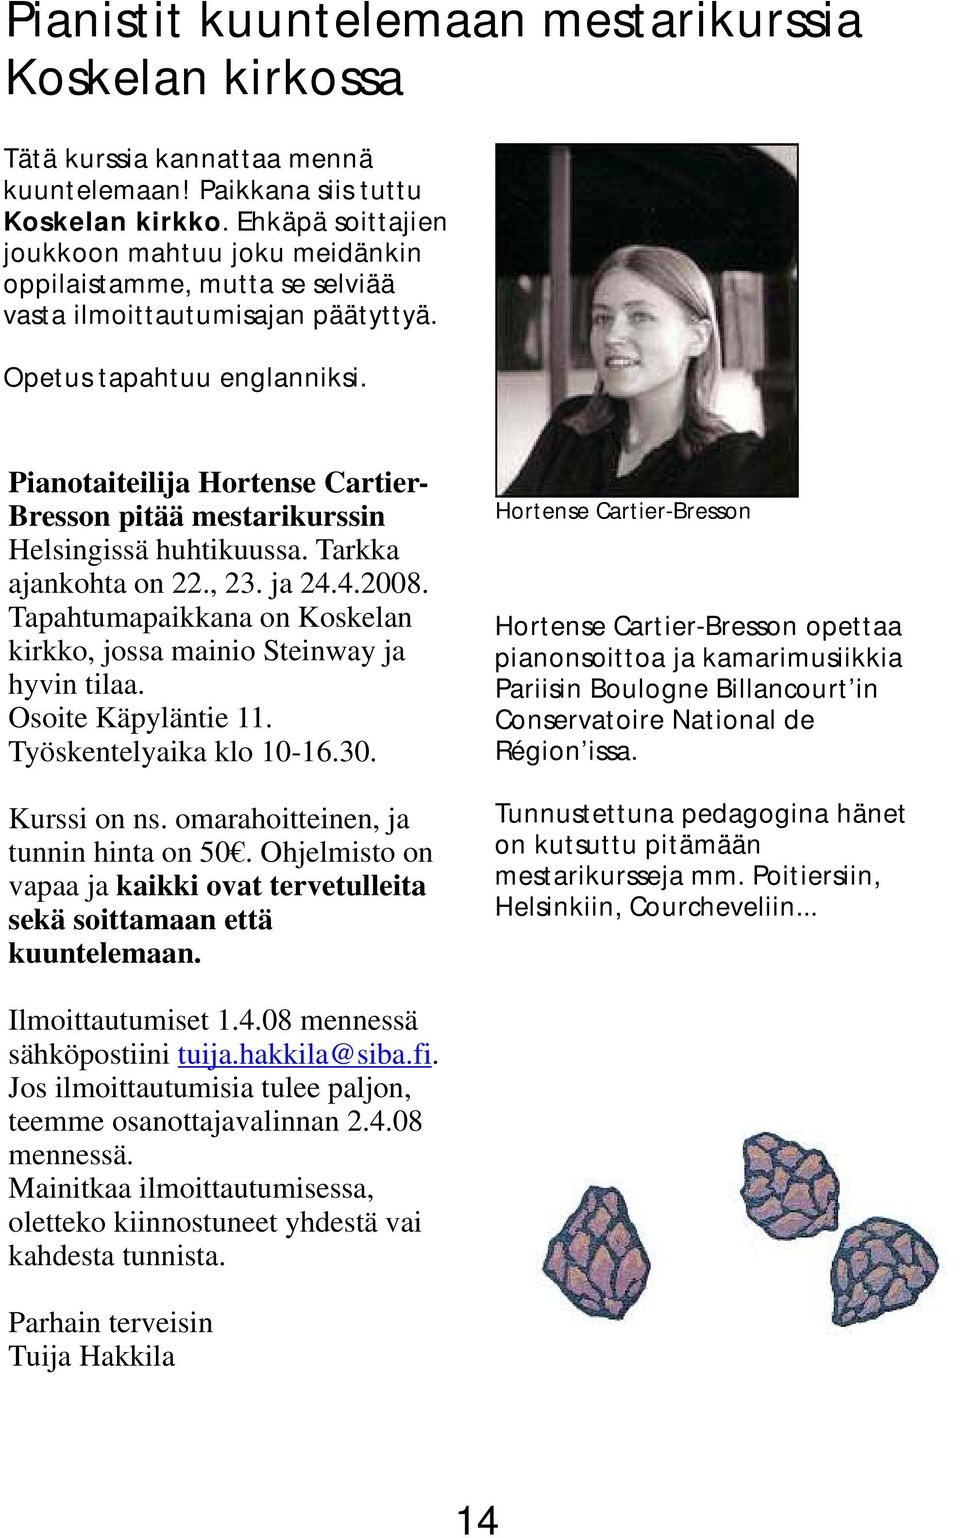 Pianotaiteilija Hortense Cartier- Bresson pitää mestarikurssin Helsingissä huhtikuussa. Tarkka ajankohta on 22., 23. ja 24.4.2008.